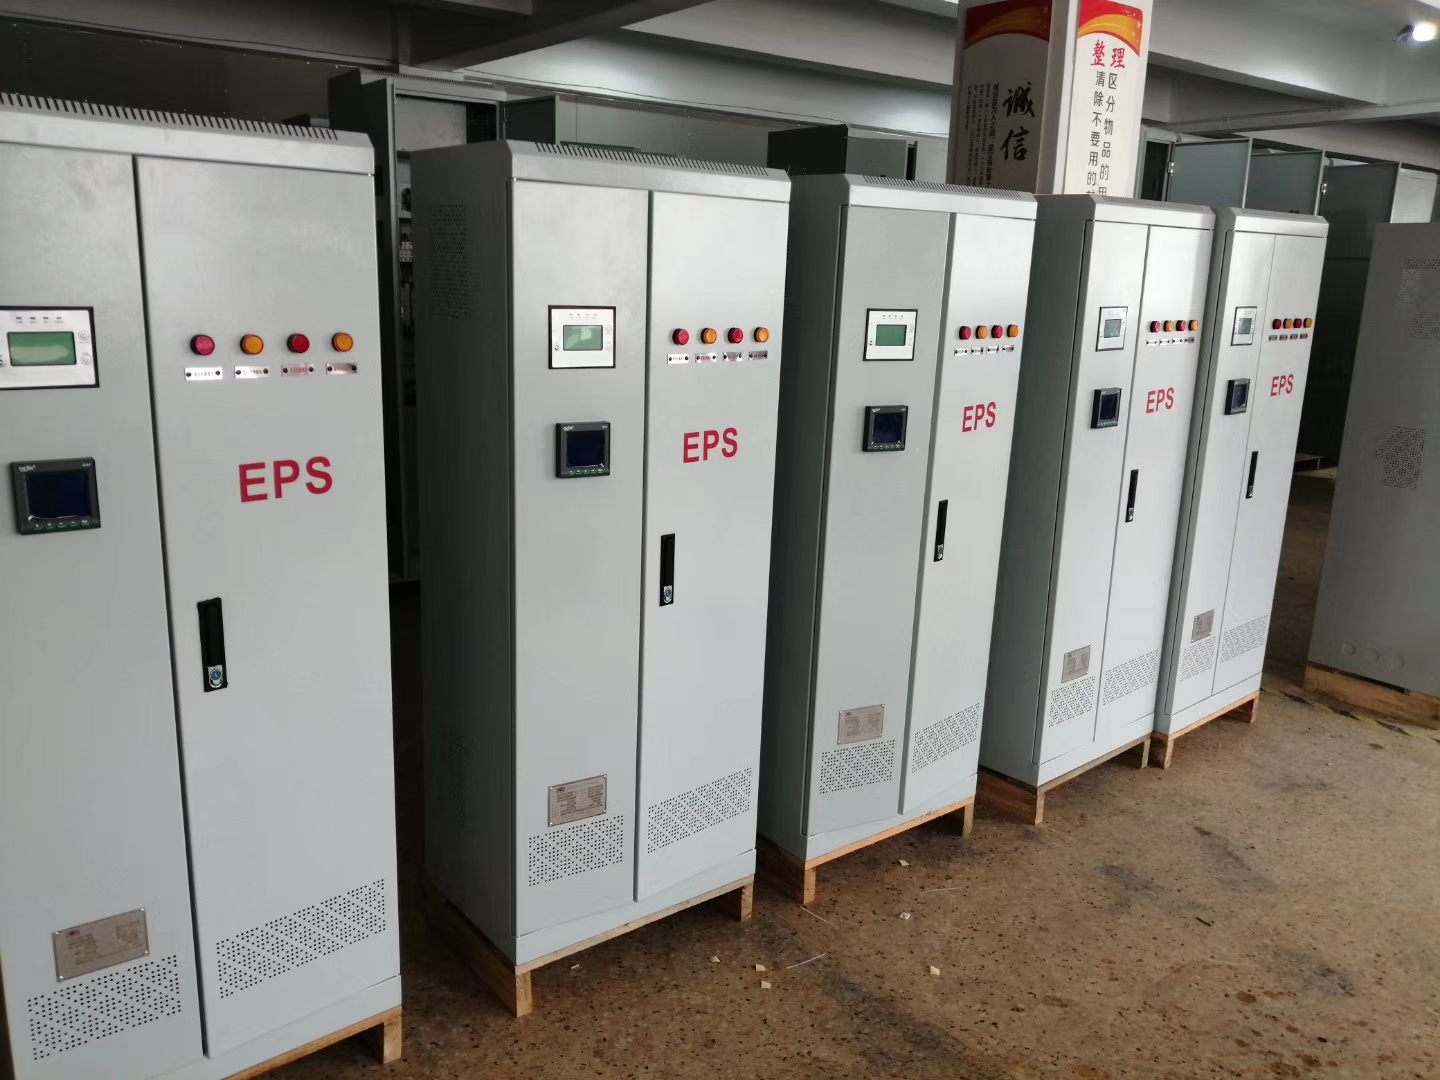 EPS应急电源15kw三相照明 动力型 EPS15KW不间断电源厂家 EPS应急电源,EPS不间断电源,EPS电源厂家,eps电源,eps15kw电源